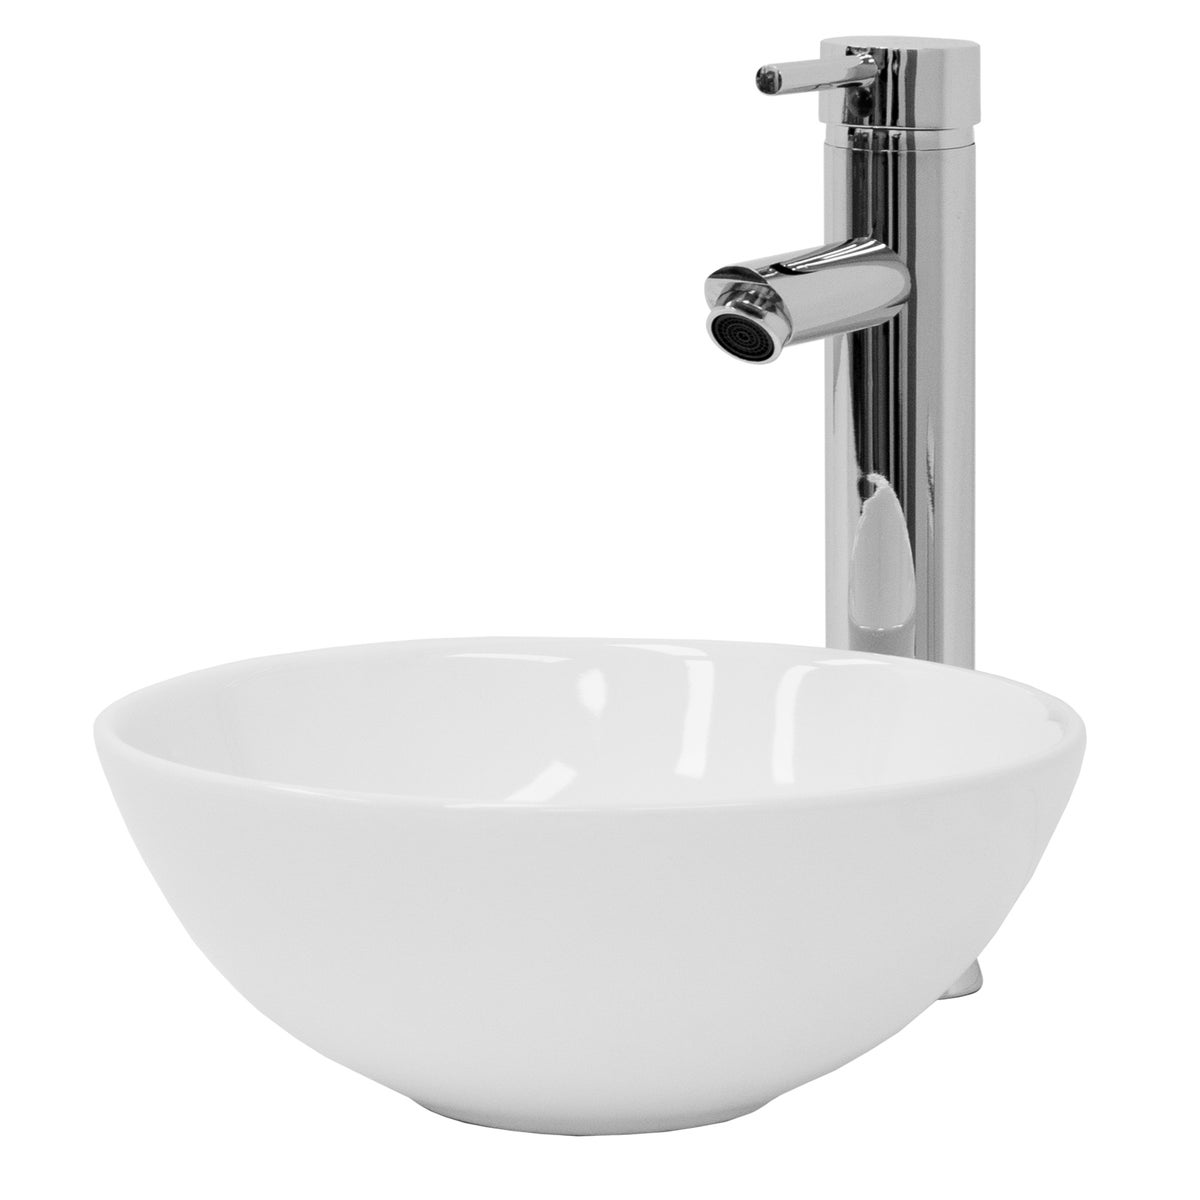 ML-Design Waschbecken aus Keramik in Weiß glänzend, Ø 28x11,6 cm, Runde Aufsatzwaschbecken, Moderne Waschtisch, Waschschale mit Abflussloch, Waschplatz Handwaschbecken, für das Badezimmer und Gäste-WC